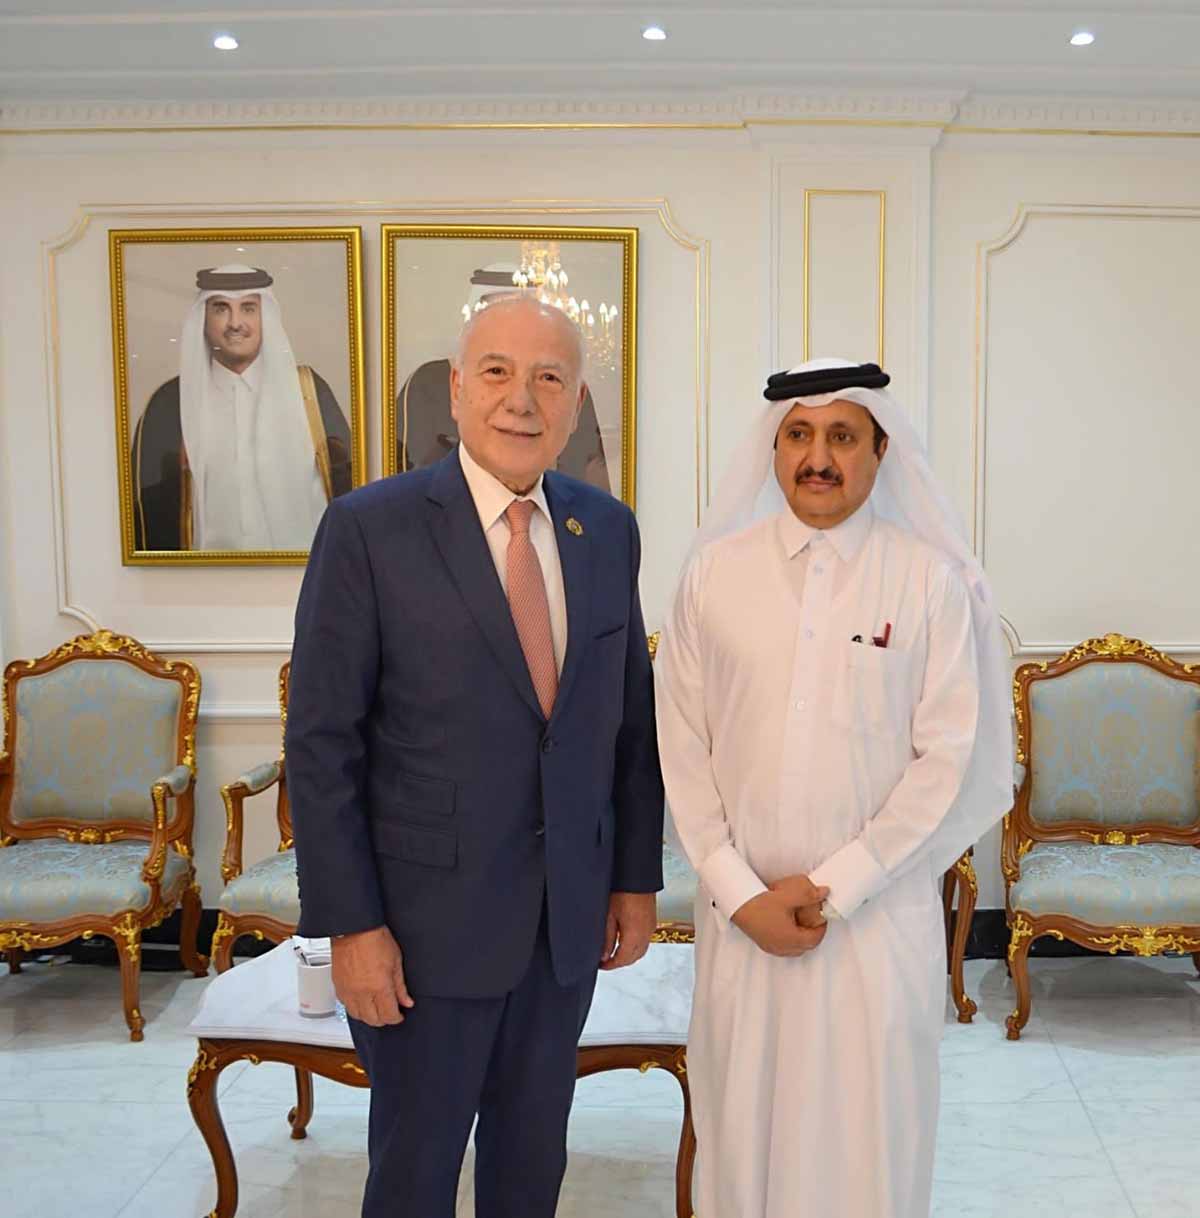 فرص للشراكة والتعاون بين غرفتي قطر وطرابلس الكبرى 